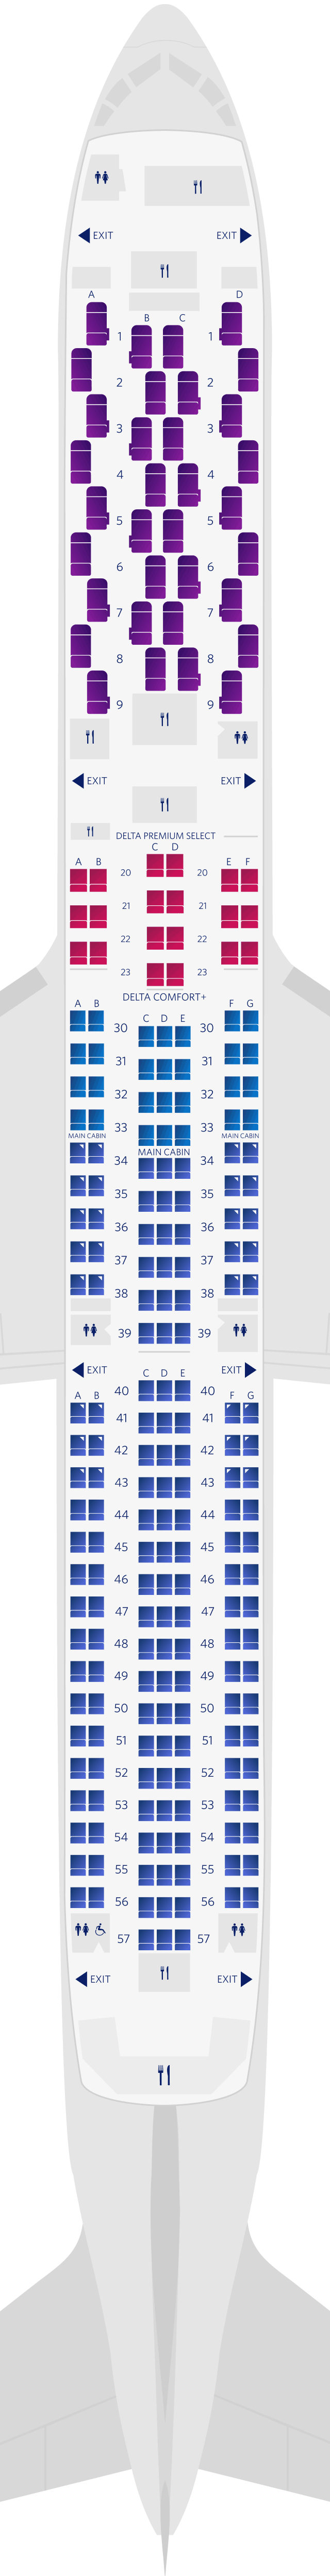 Configuration des sièges du Boeing 767-400ER (764)